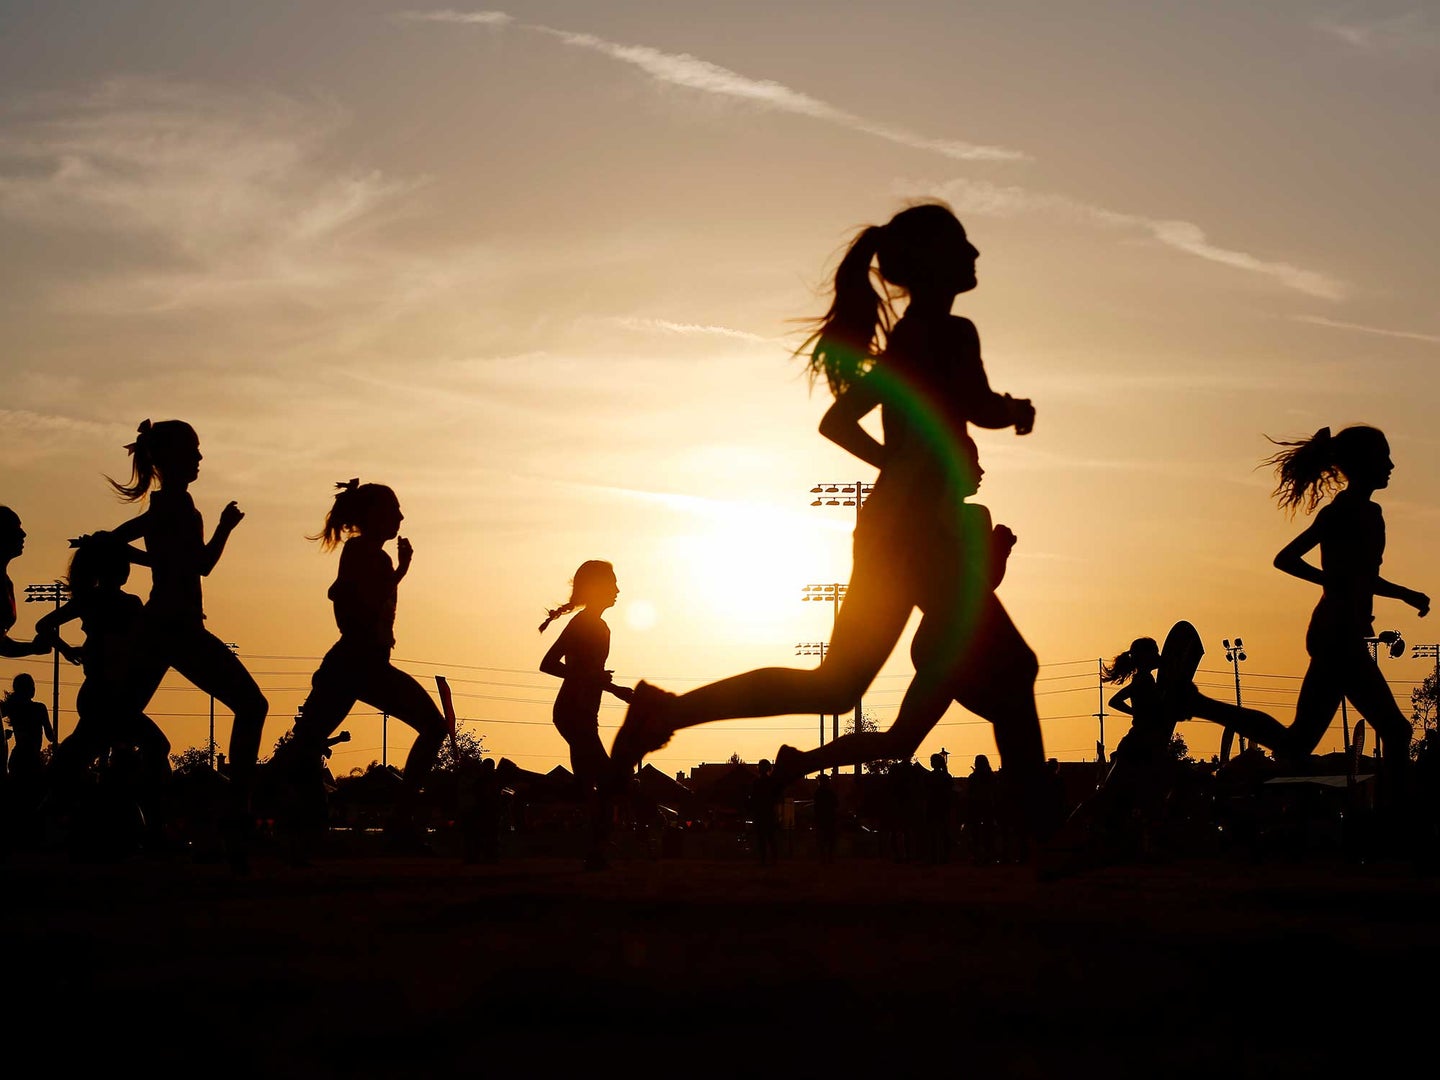 Children running a race at sunset